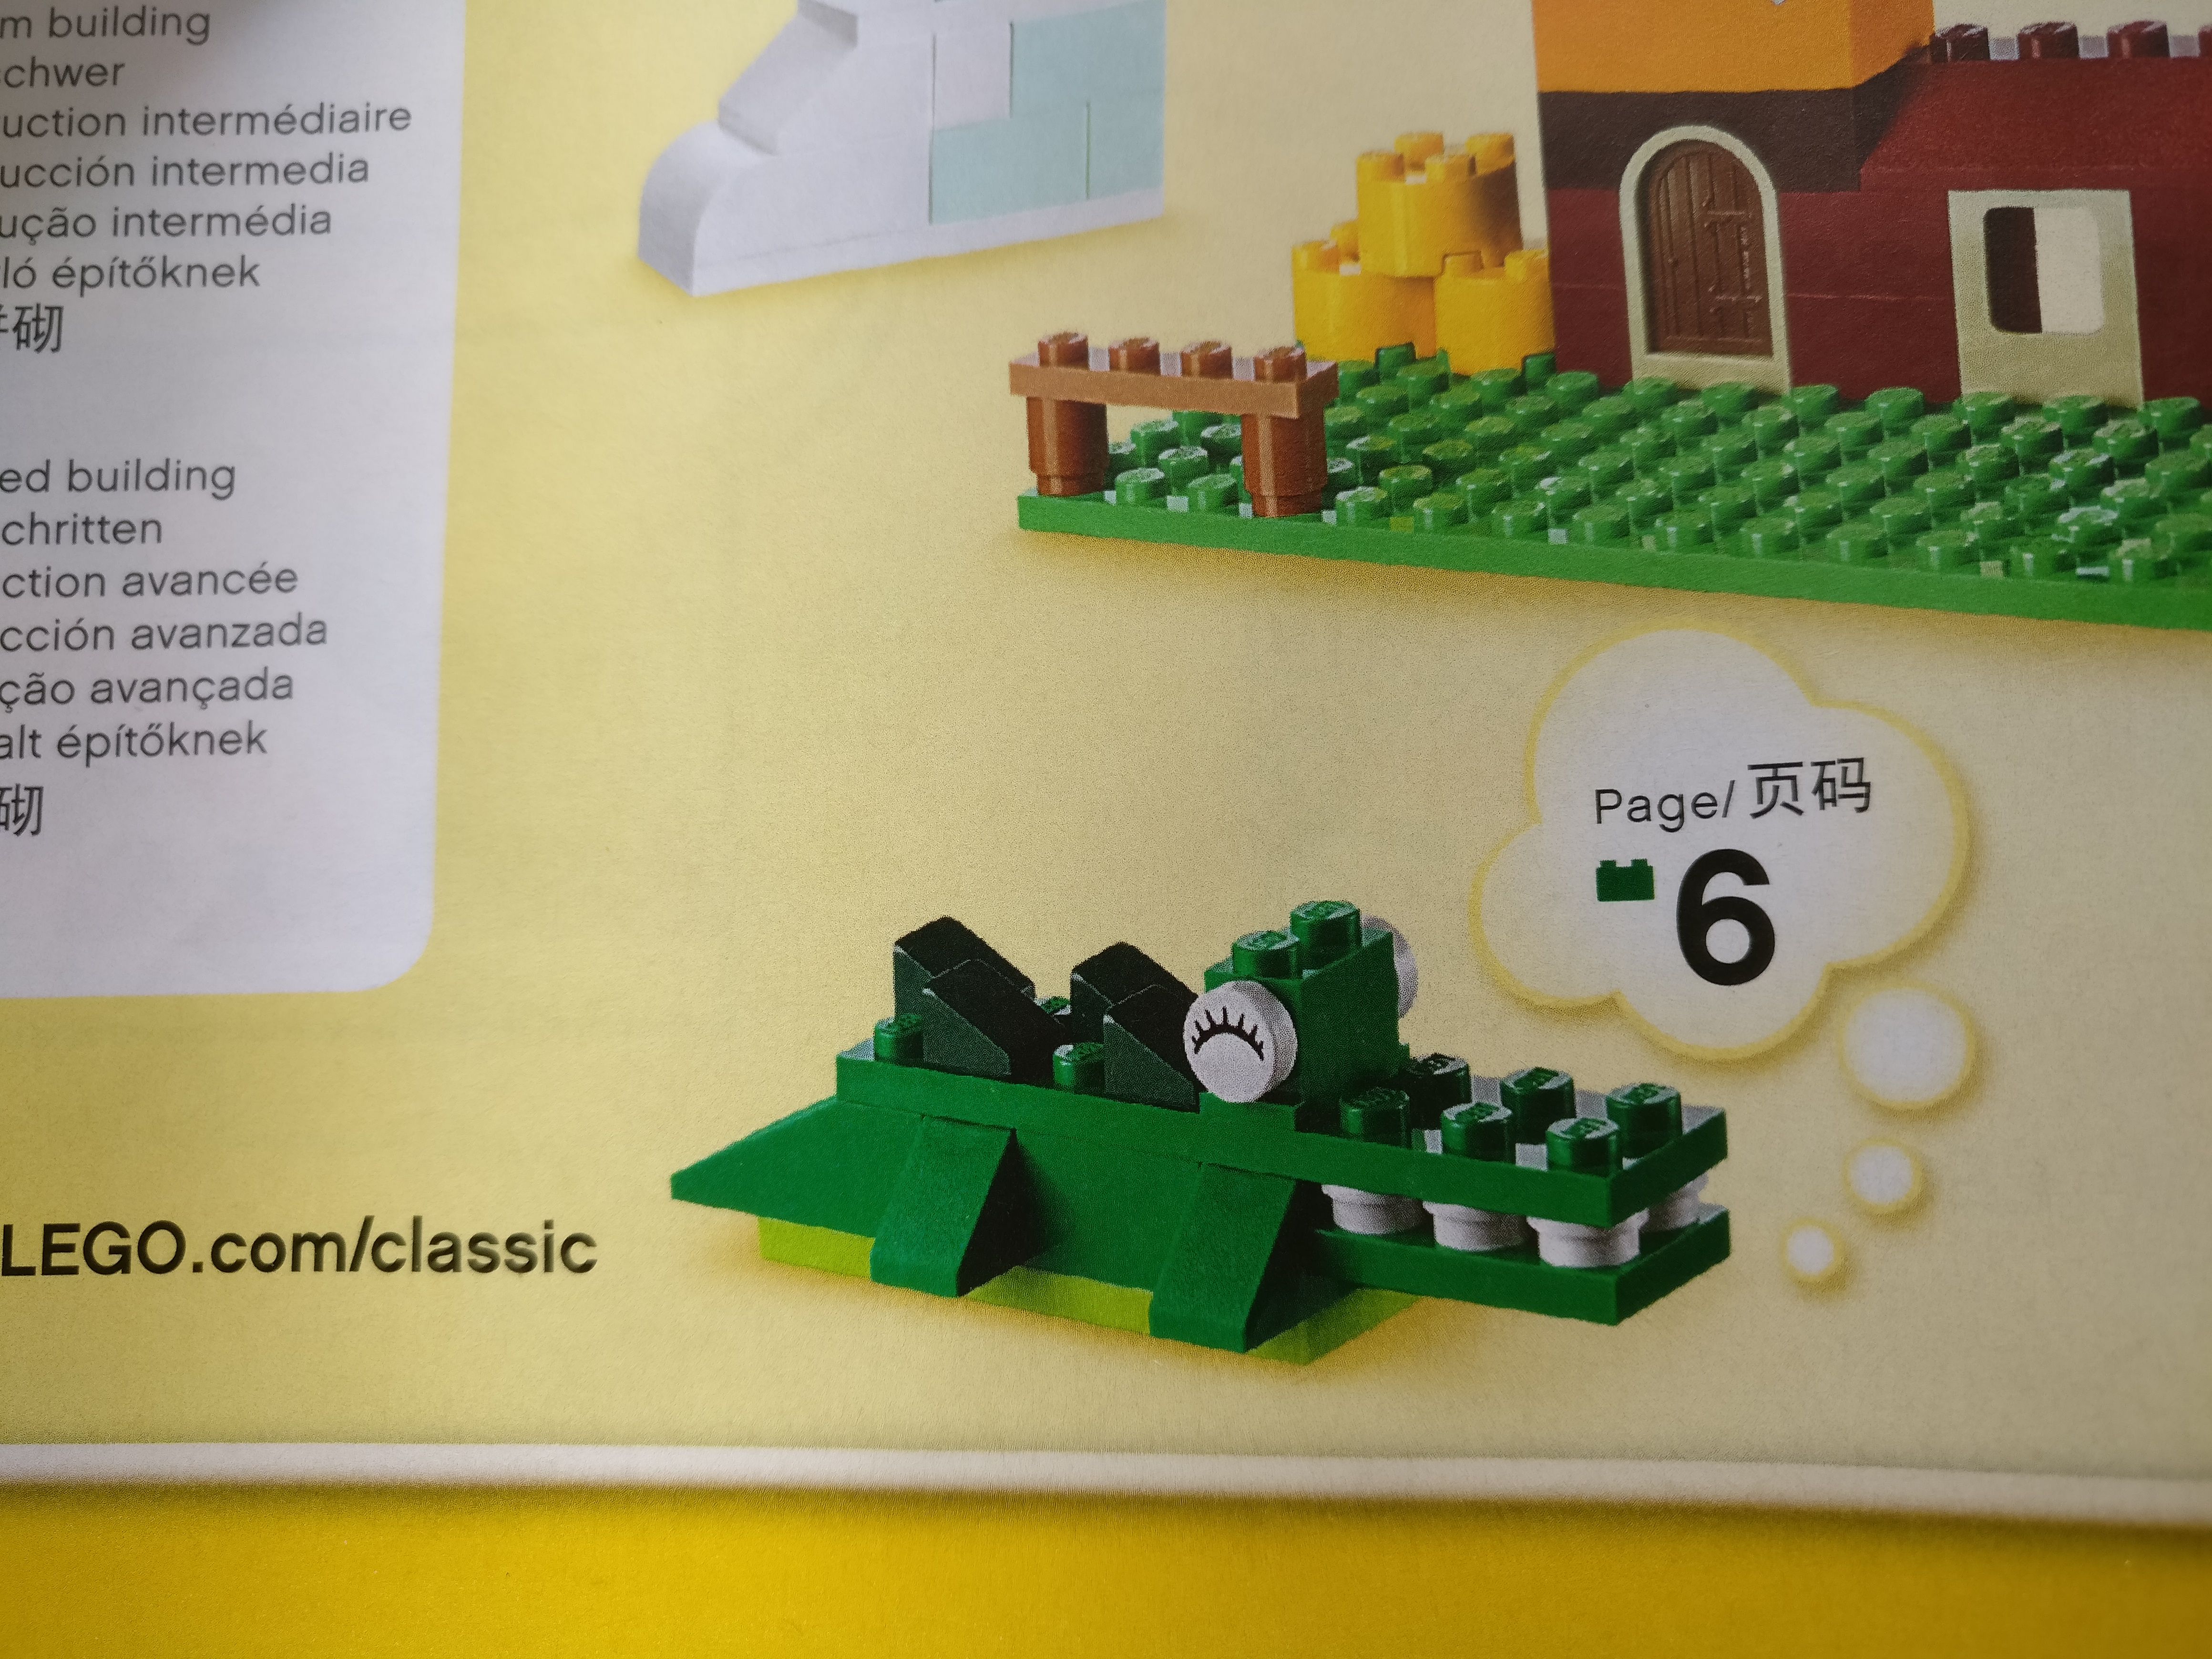 Jugamos con LEGO: El Cocodrilo - We play with LEGO: The Crocodile — Steemit